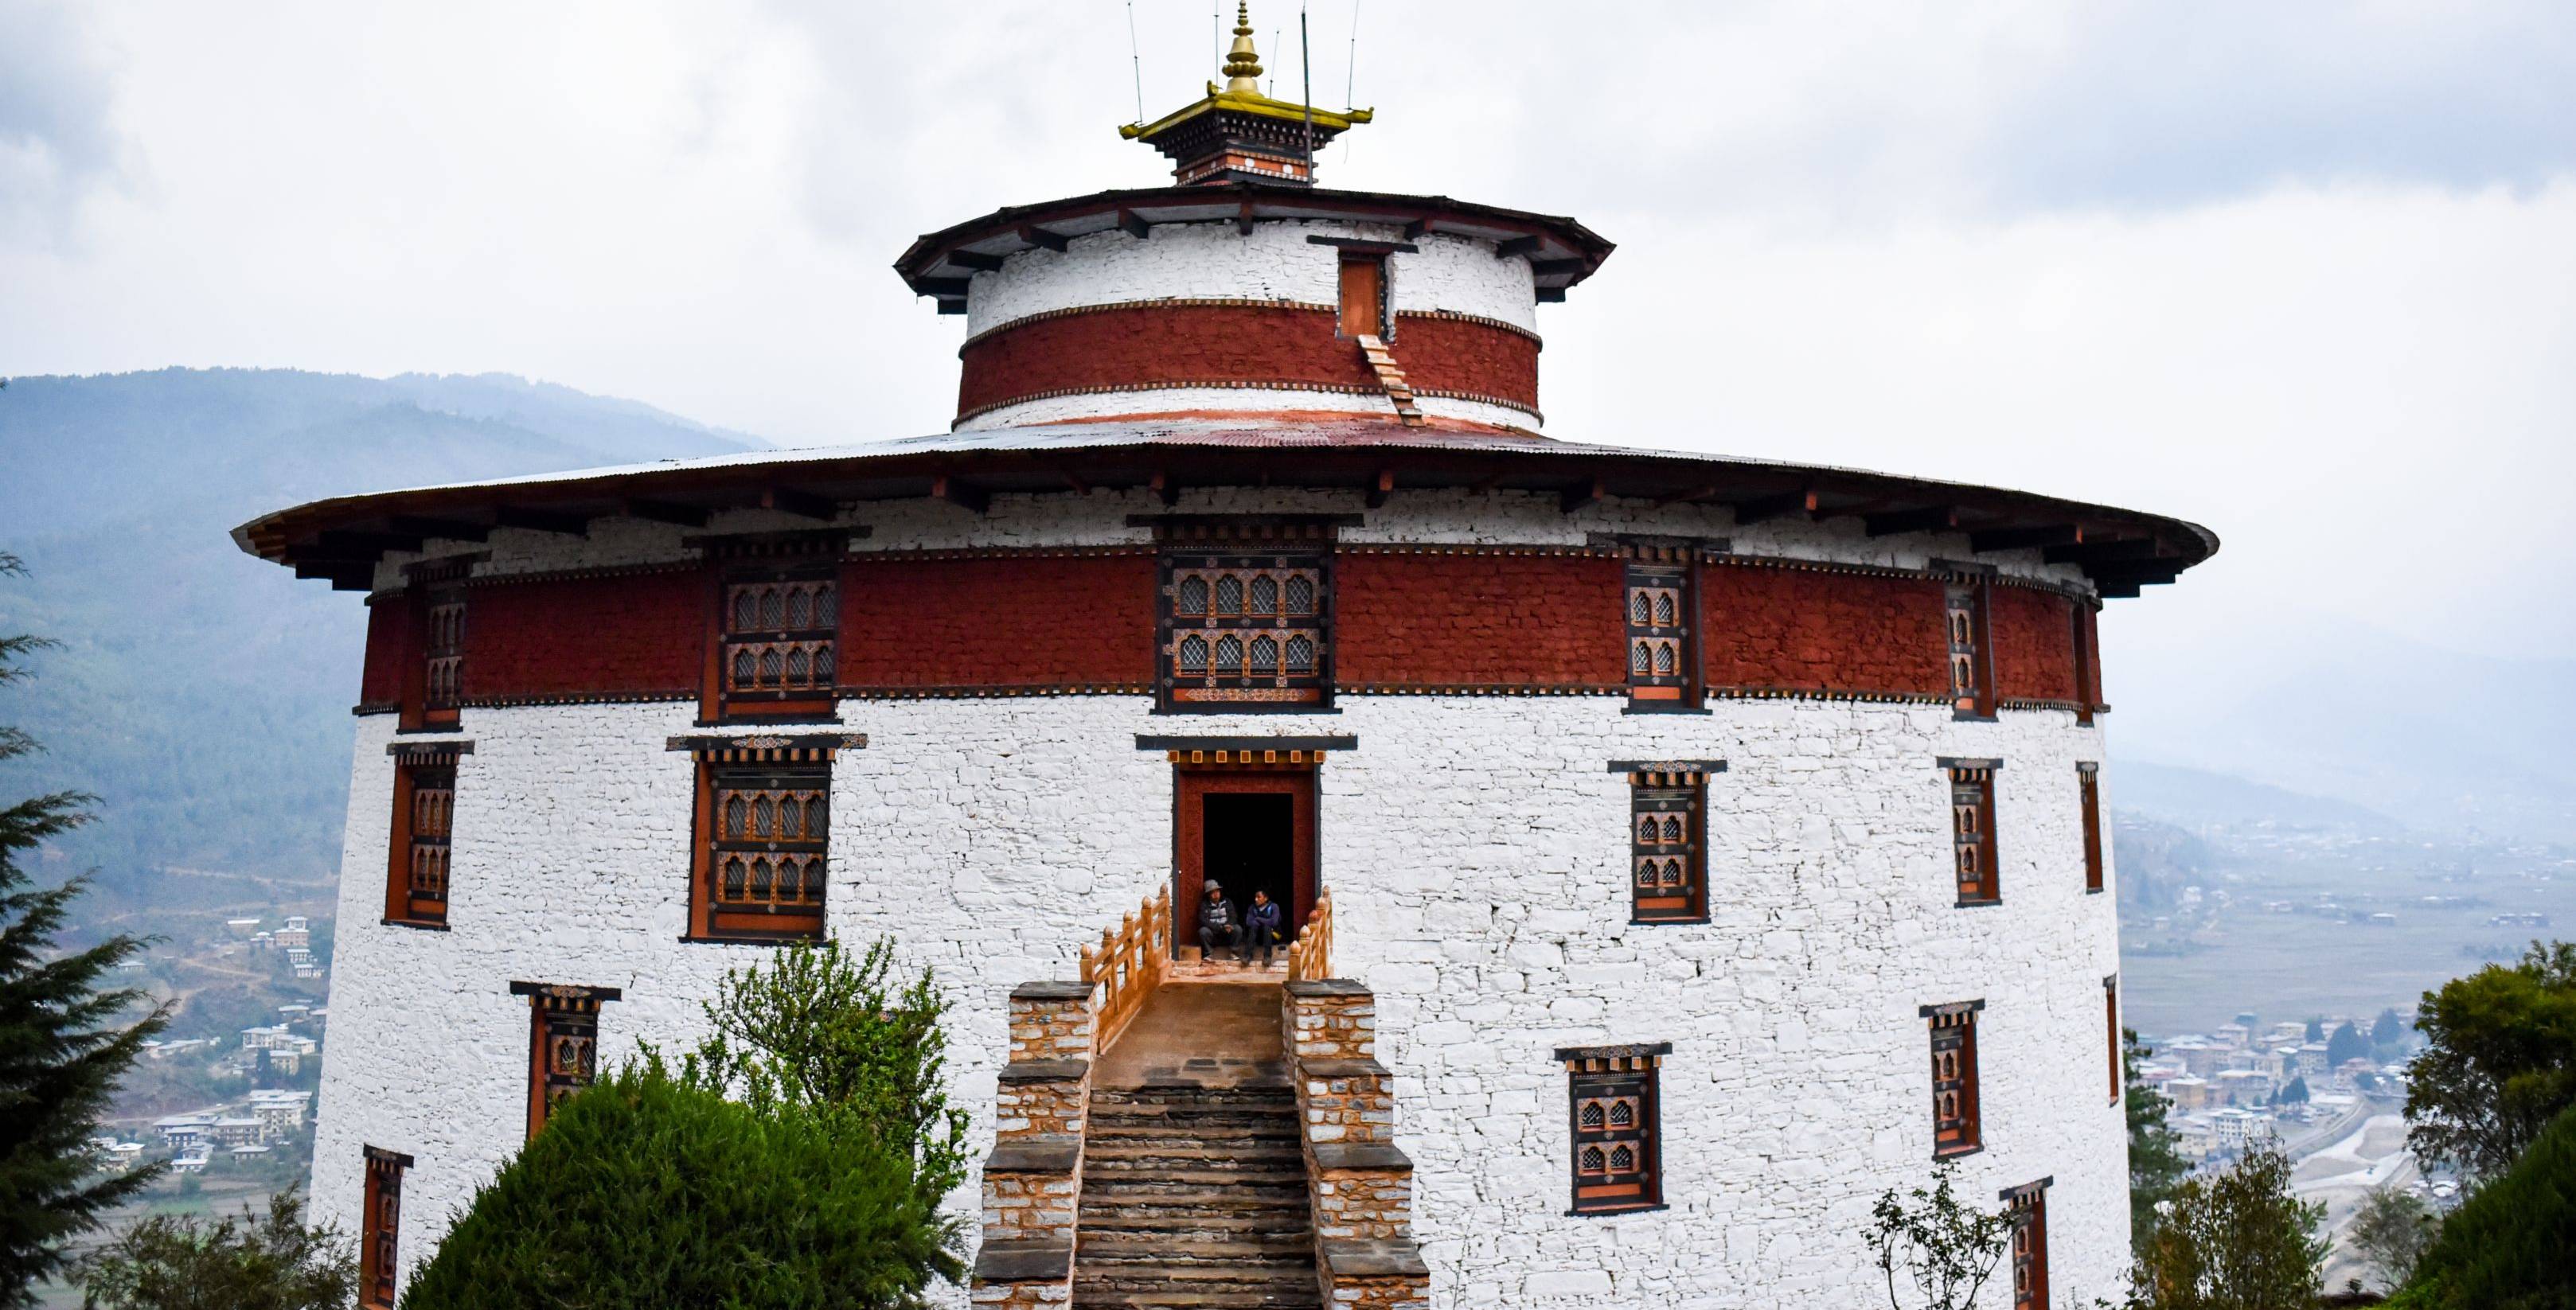 Arrivo in Bhutan: scoperta delle risaie e i villaggi della regione di Paro